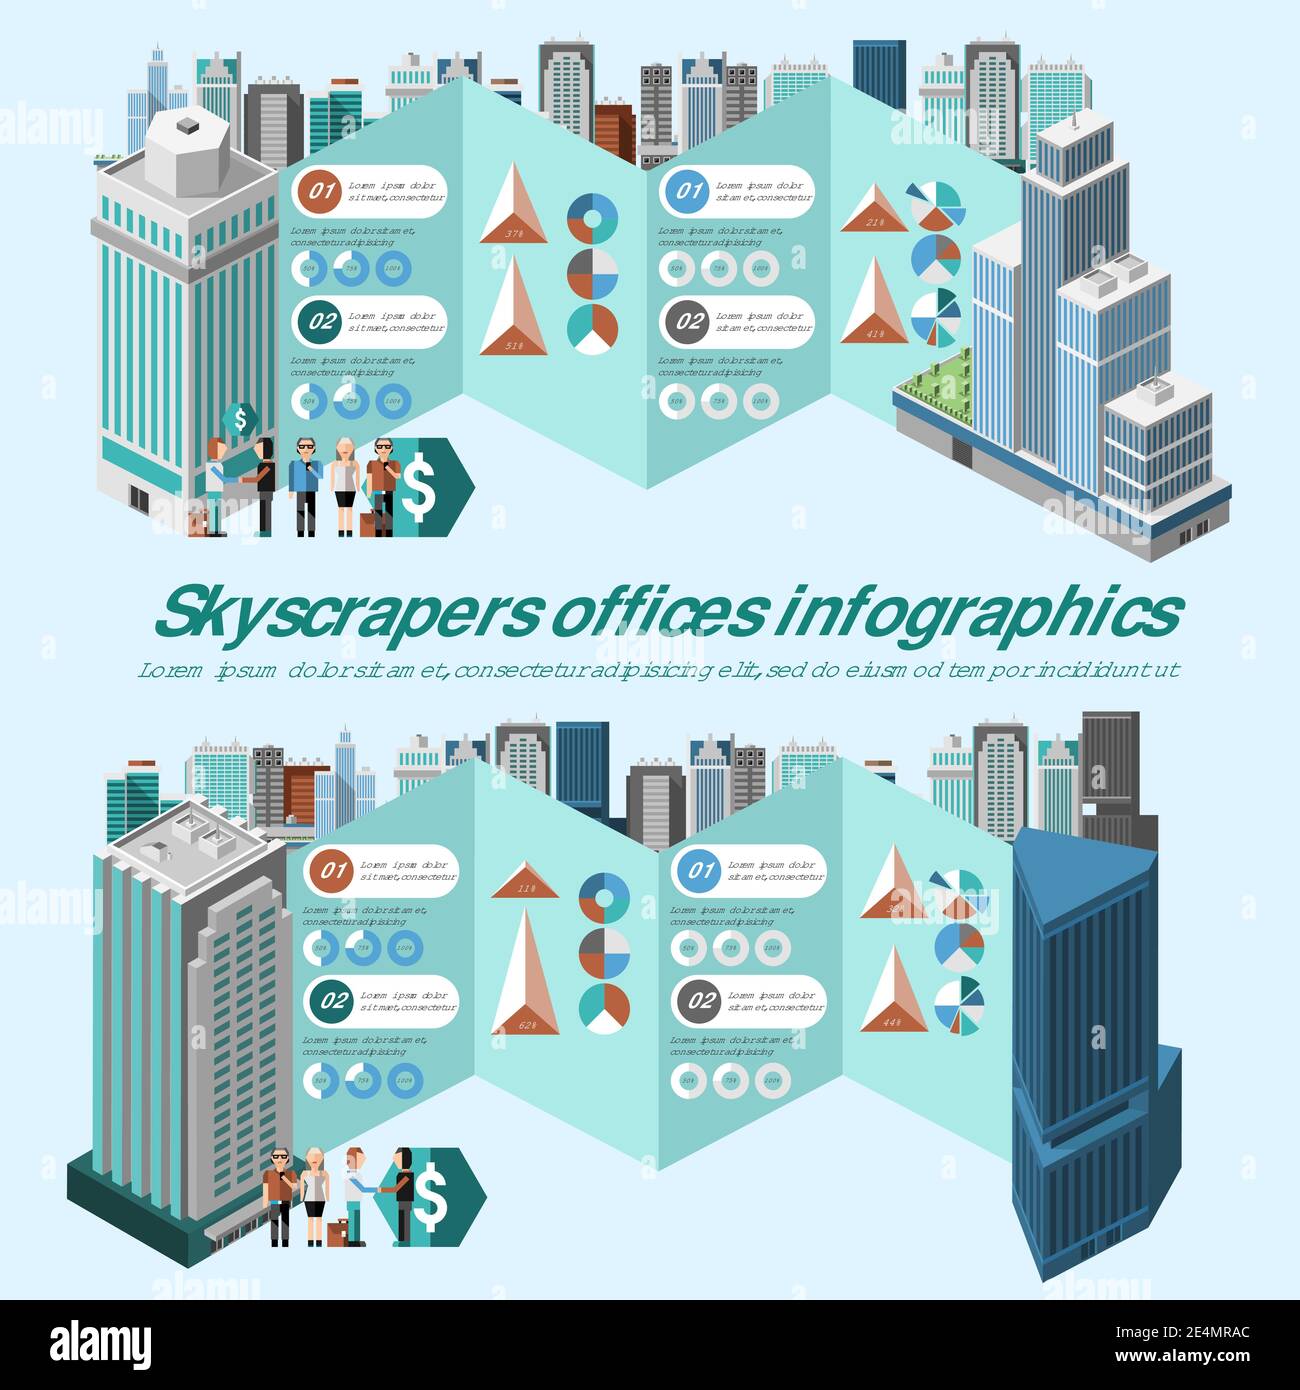 Infographies de bureaux gratte-ciel avec des bâtiments et des graphiques 3d isométriques élevés illustration vectorielle Illustration de Vecteur